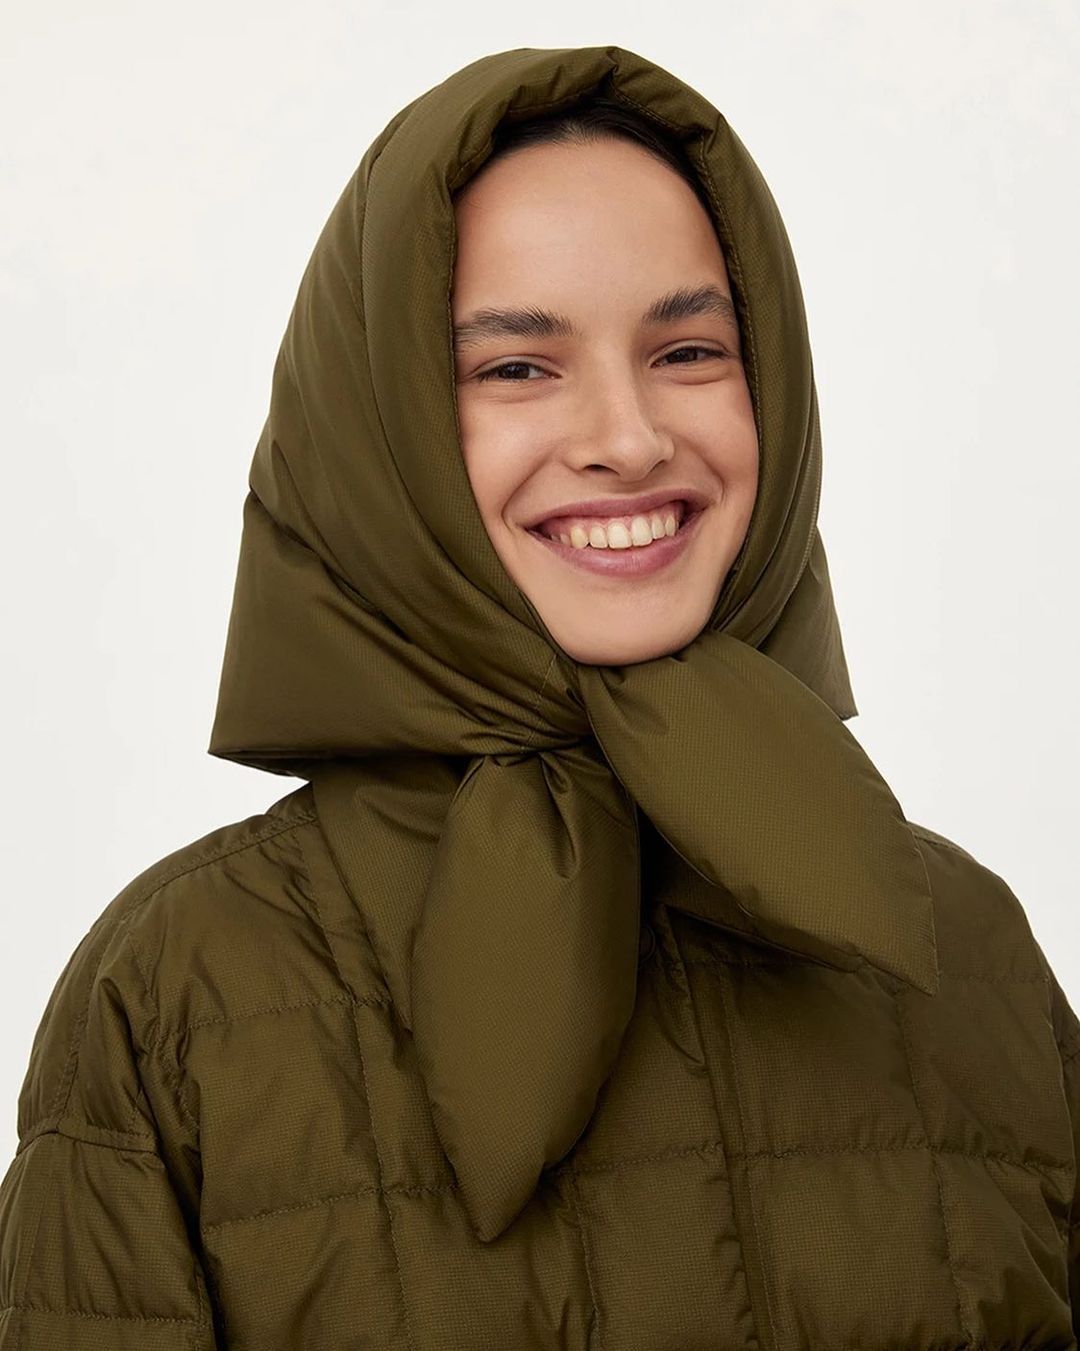 модный головной убор зима 2021 2022 теплое на голову платок косынка дутая зеленая хаки